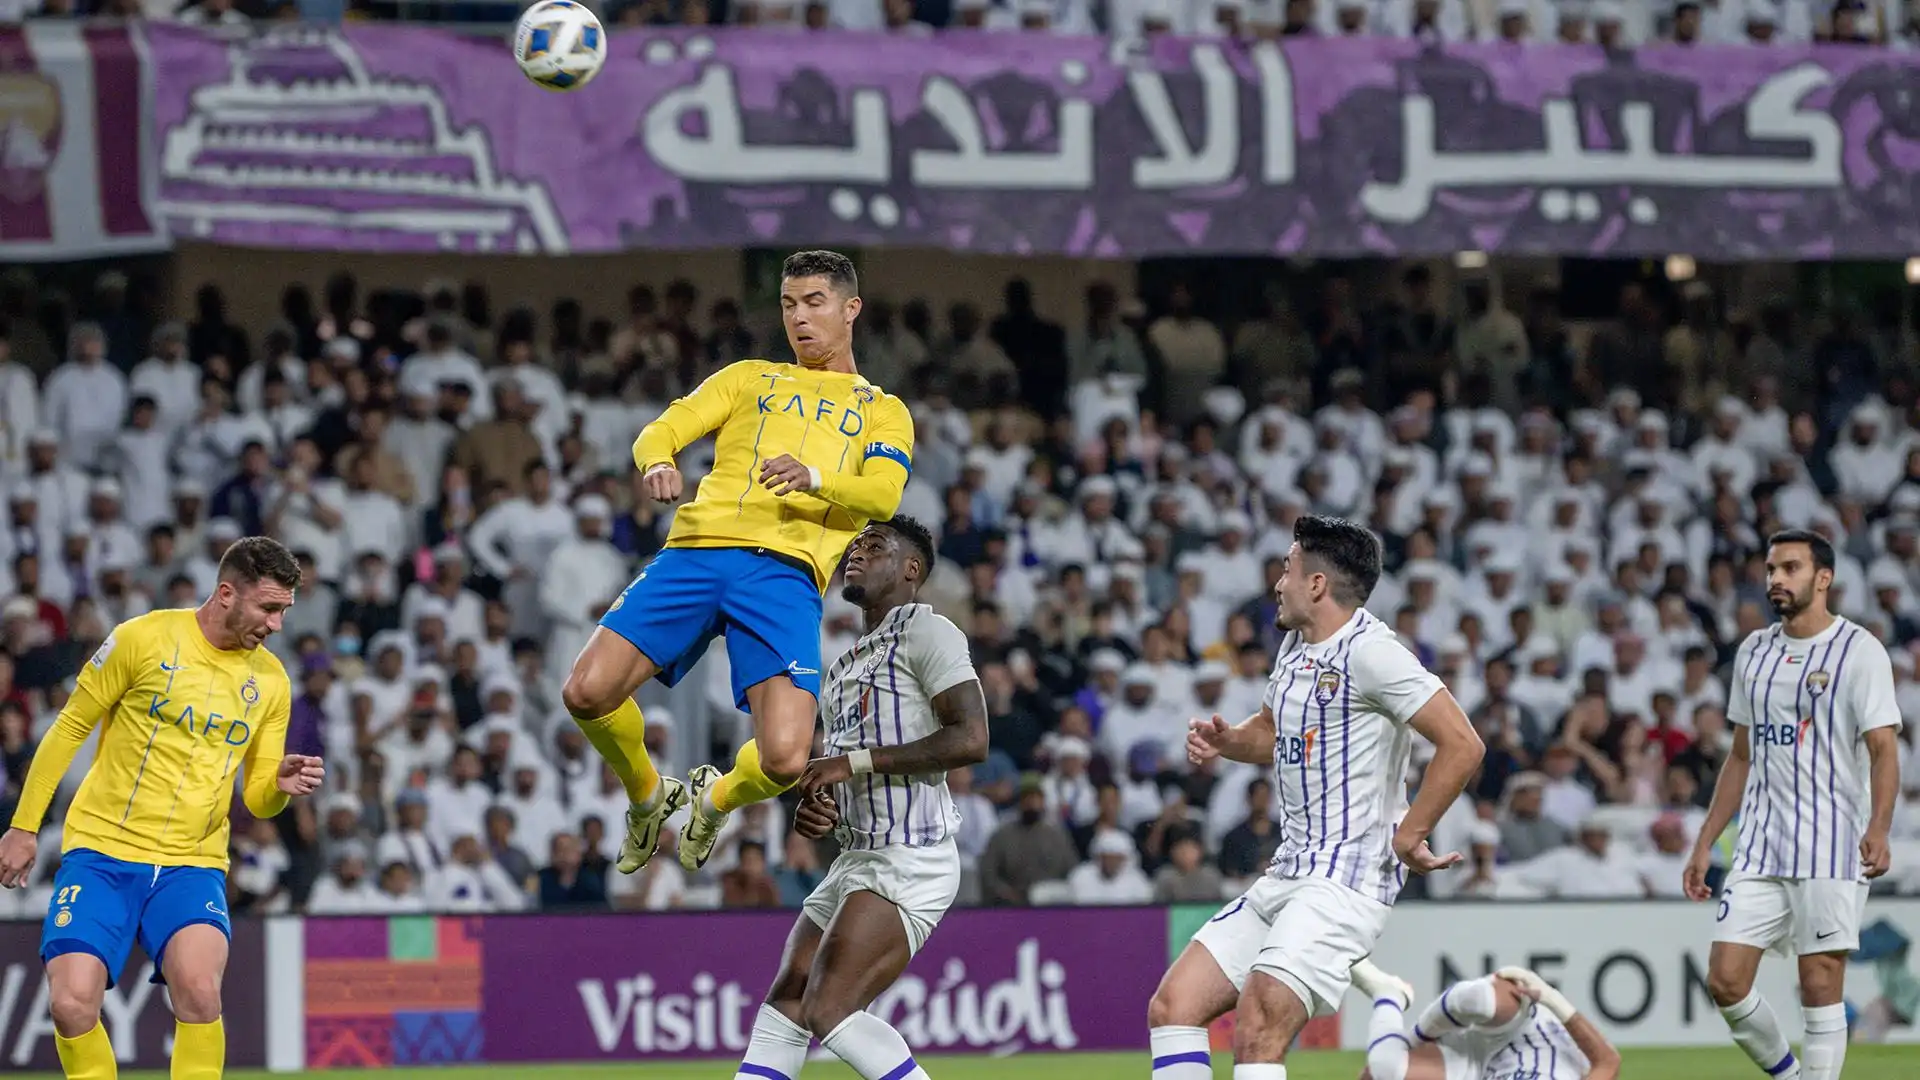 Ronaldo al termine della partita ha di nuovo battibeccato con i tifosi presenti: "Ci vediamo a Riyad", ha fatto intendere con un gesto della mano